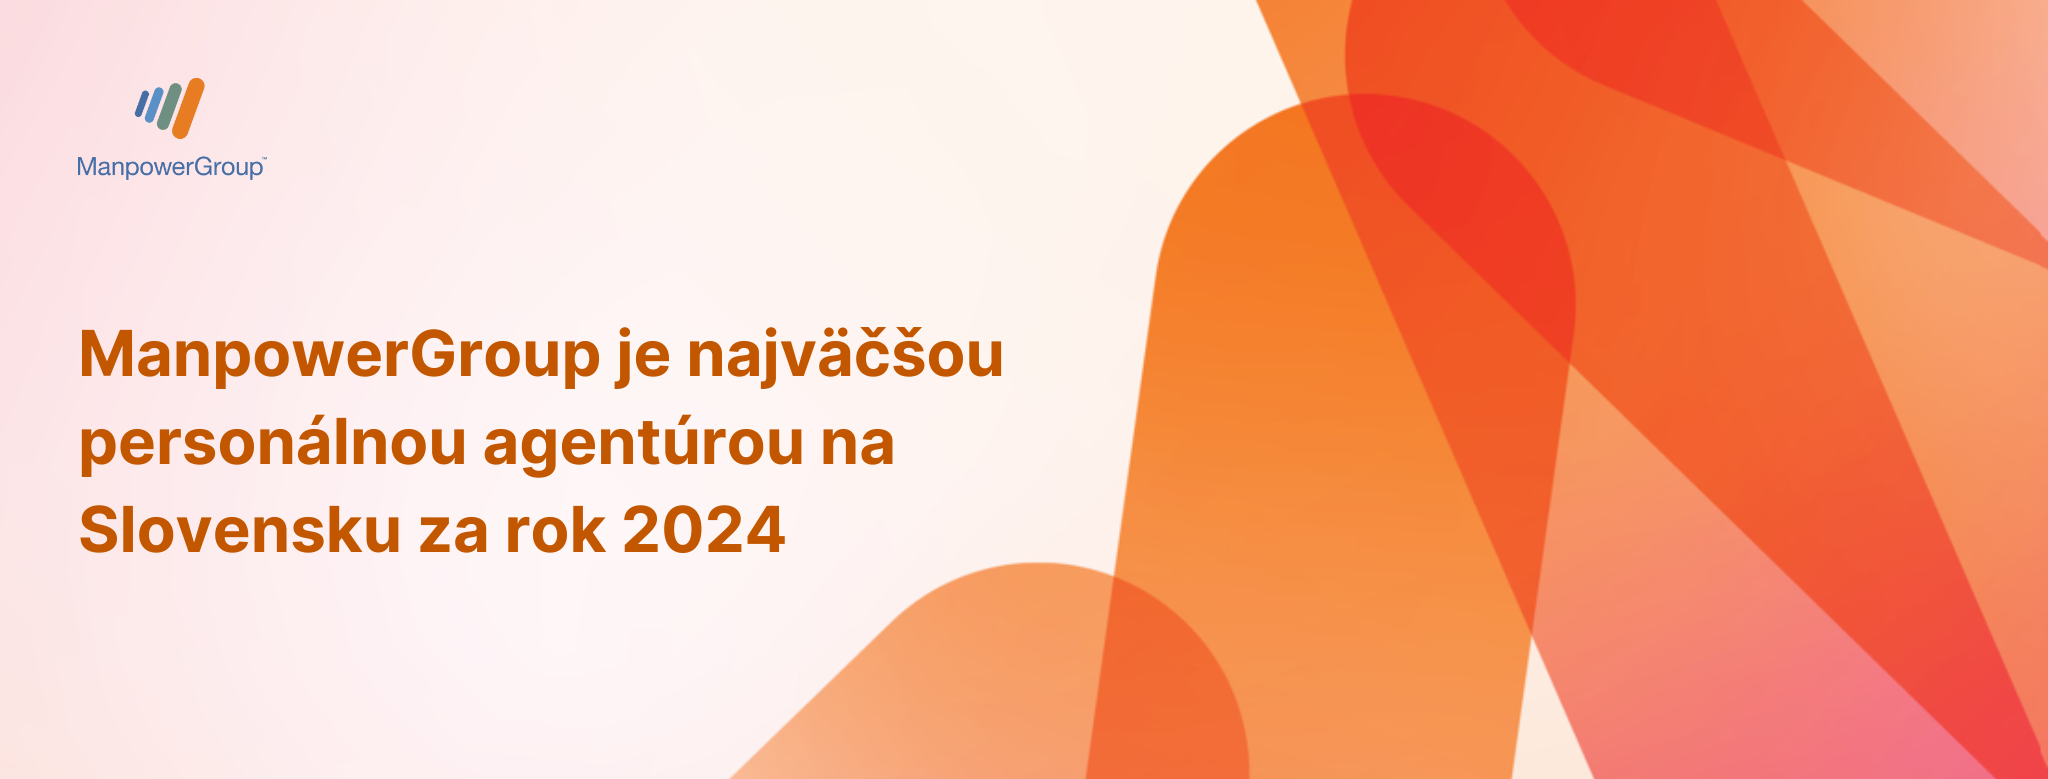 ManpowerGroup je aj v roku 2024 najväčšou personálnou agentúrou na Slovensku